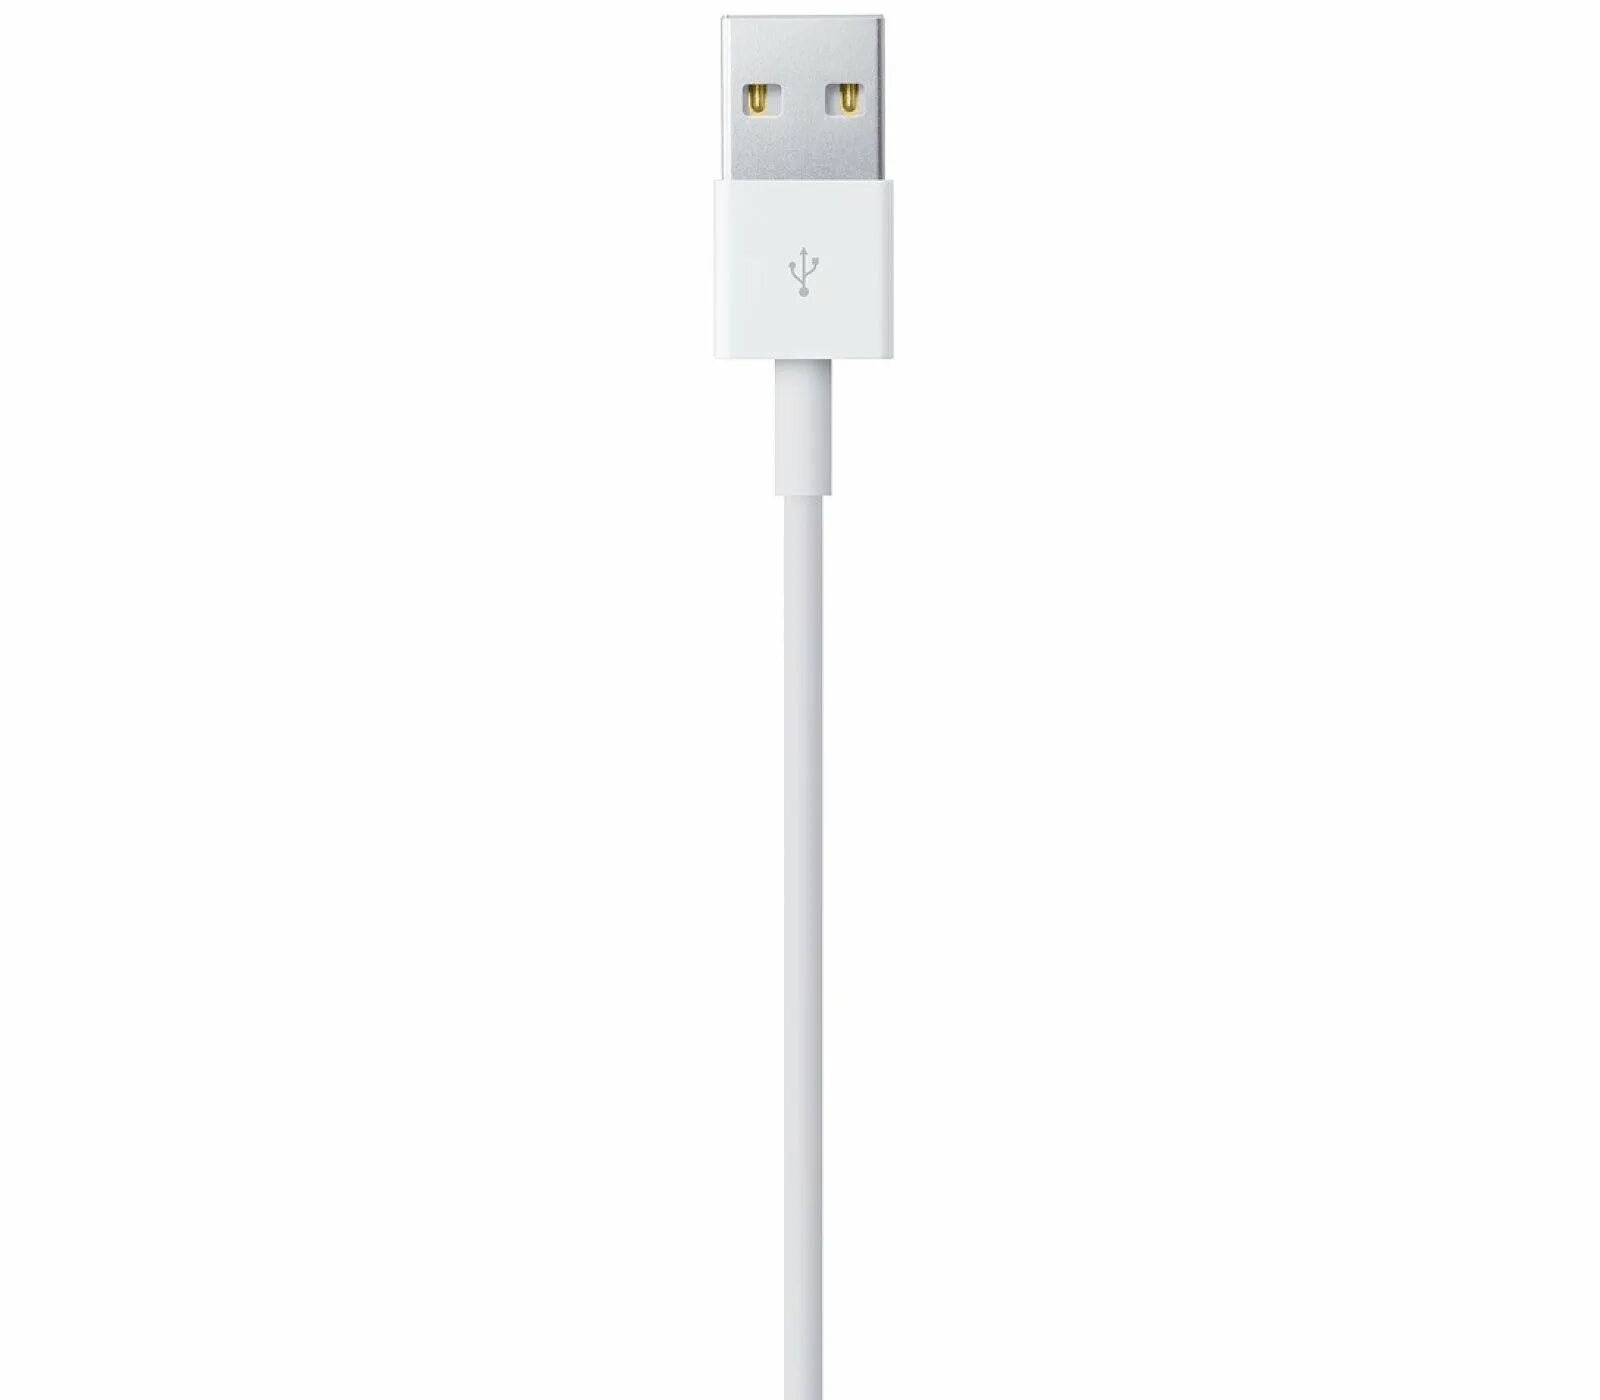 Apple кабель USB-C/Lightning 2 м. Кабель Apple USB-Lightning, 2м, белый (md819zm/a). Кабель Apple Lightning to USB (1м) md818zm/a. Кабель Apple mxly2zm/a. Кабель lightning купить оригинал